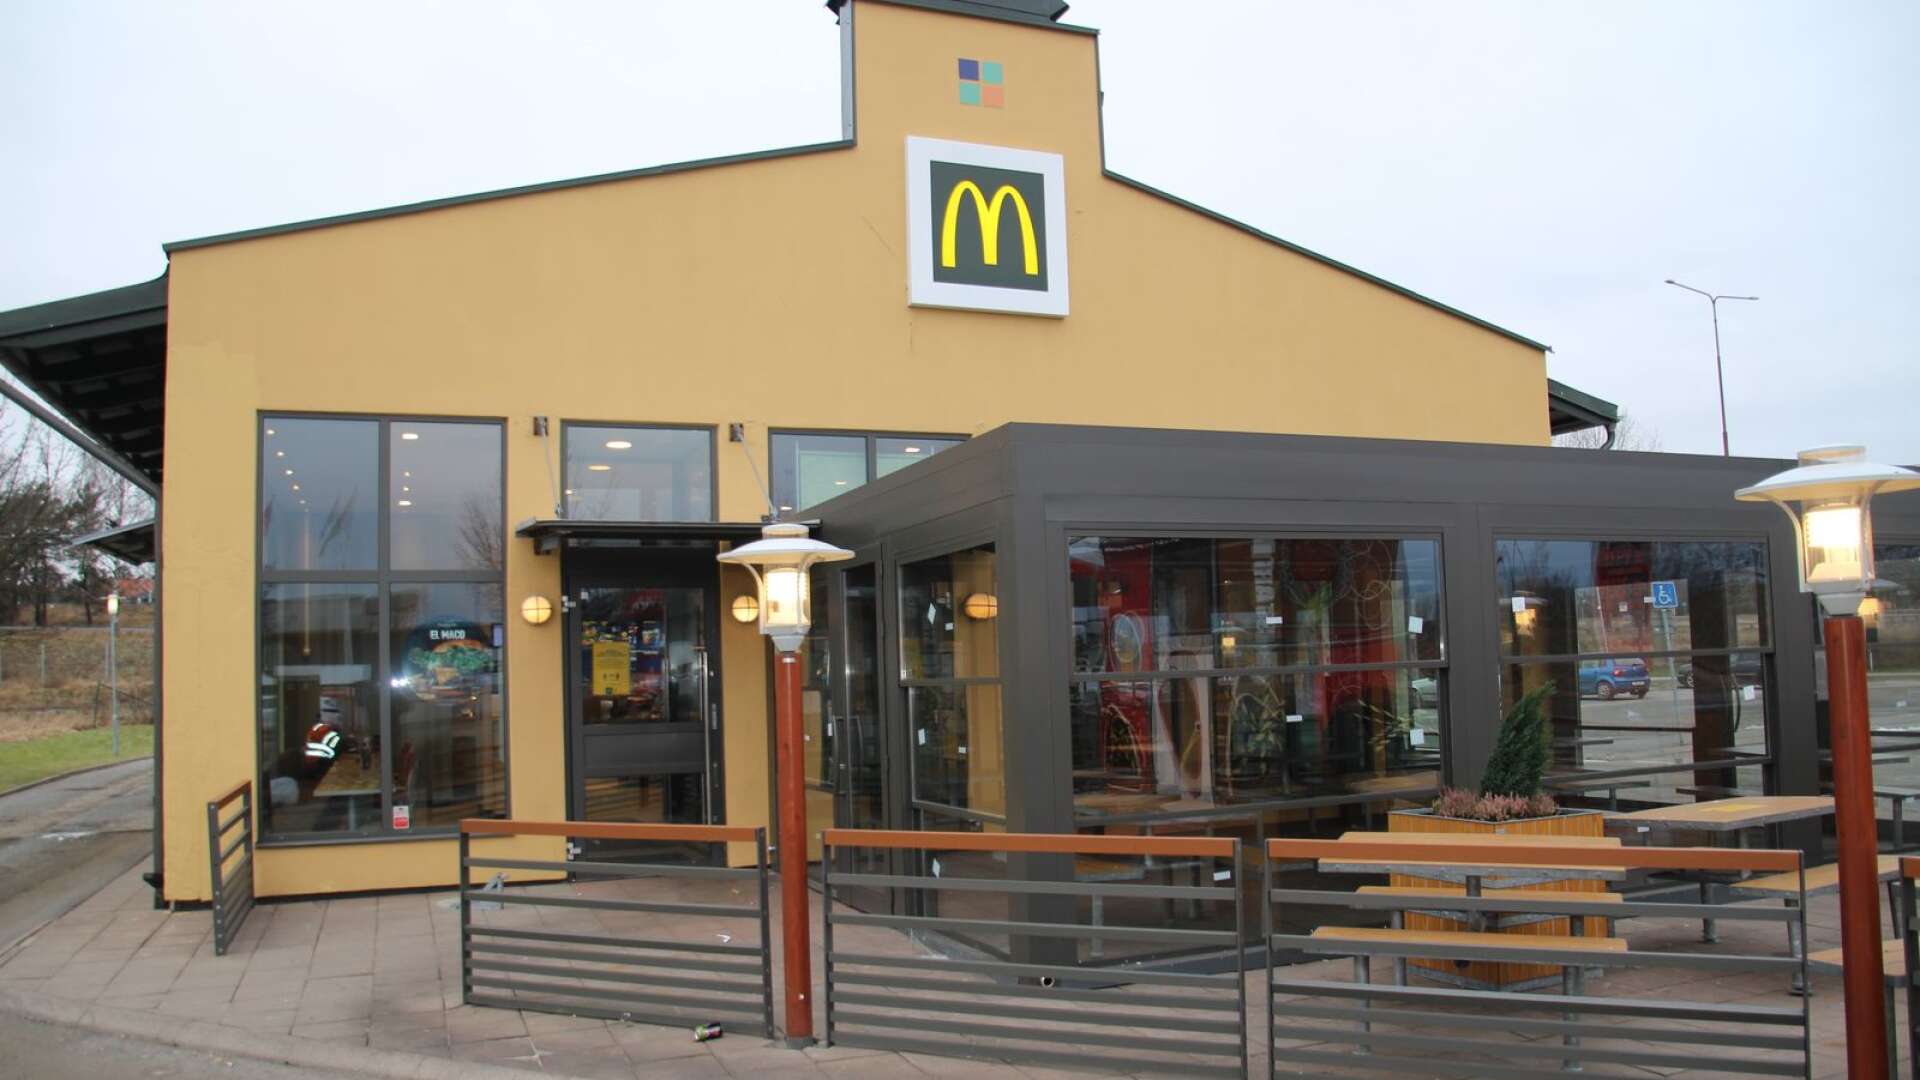 McDonalds i Säffle med en ny vinterträdgård, slog rekord under den gångna helgen. Aldrig tidigare har man sålt så många måltider och haft så många bilar i drive-in-serveringen.